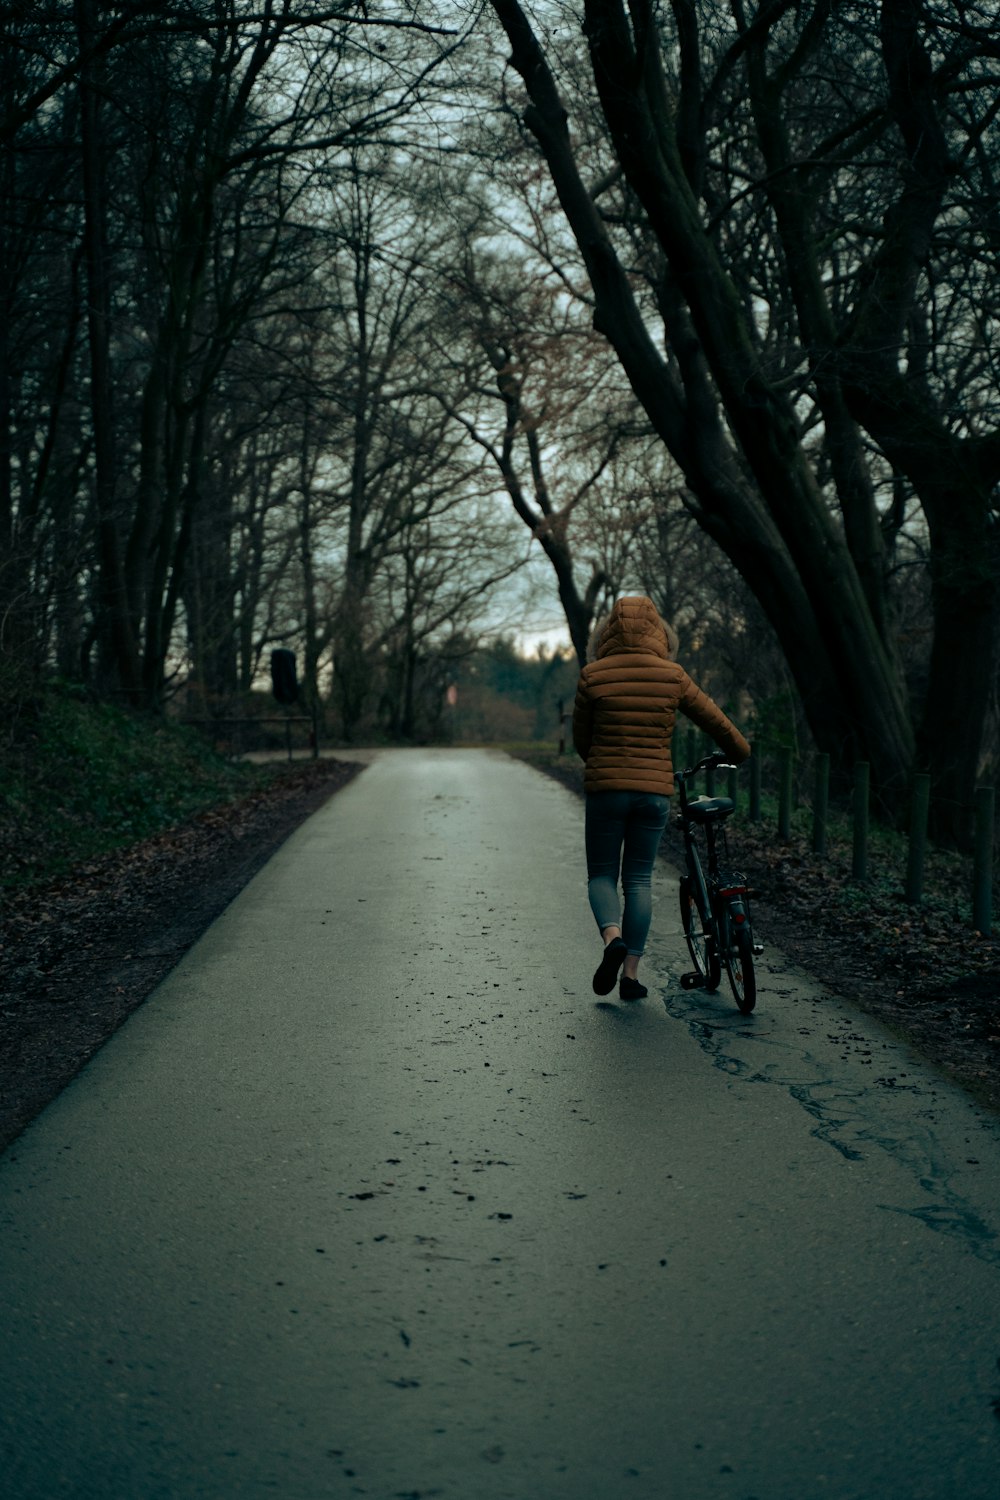 a person walking a bike down a road